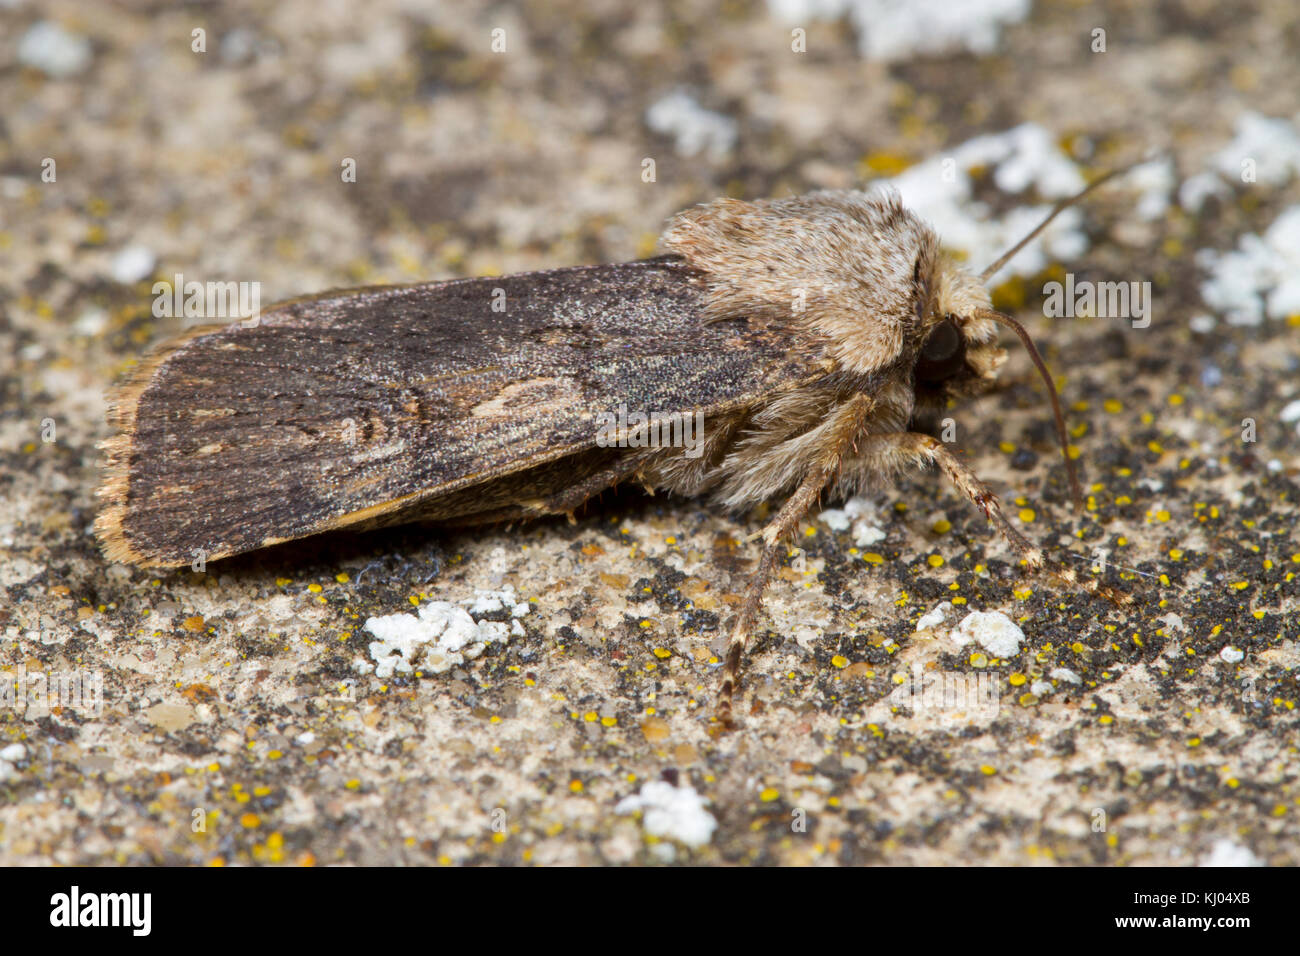 En forme de navette Dart (Agrotis puta) papillon adulte reposant sur un mur couvert de lichens. Powys, Pays de Galles. En août. Banque D'Images